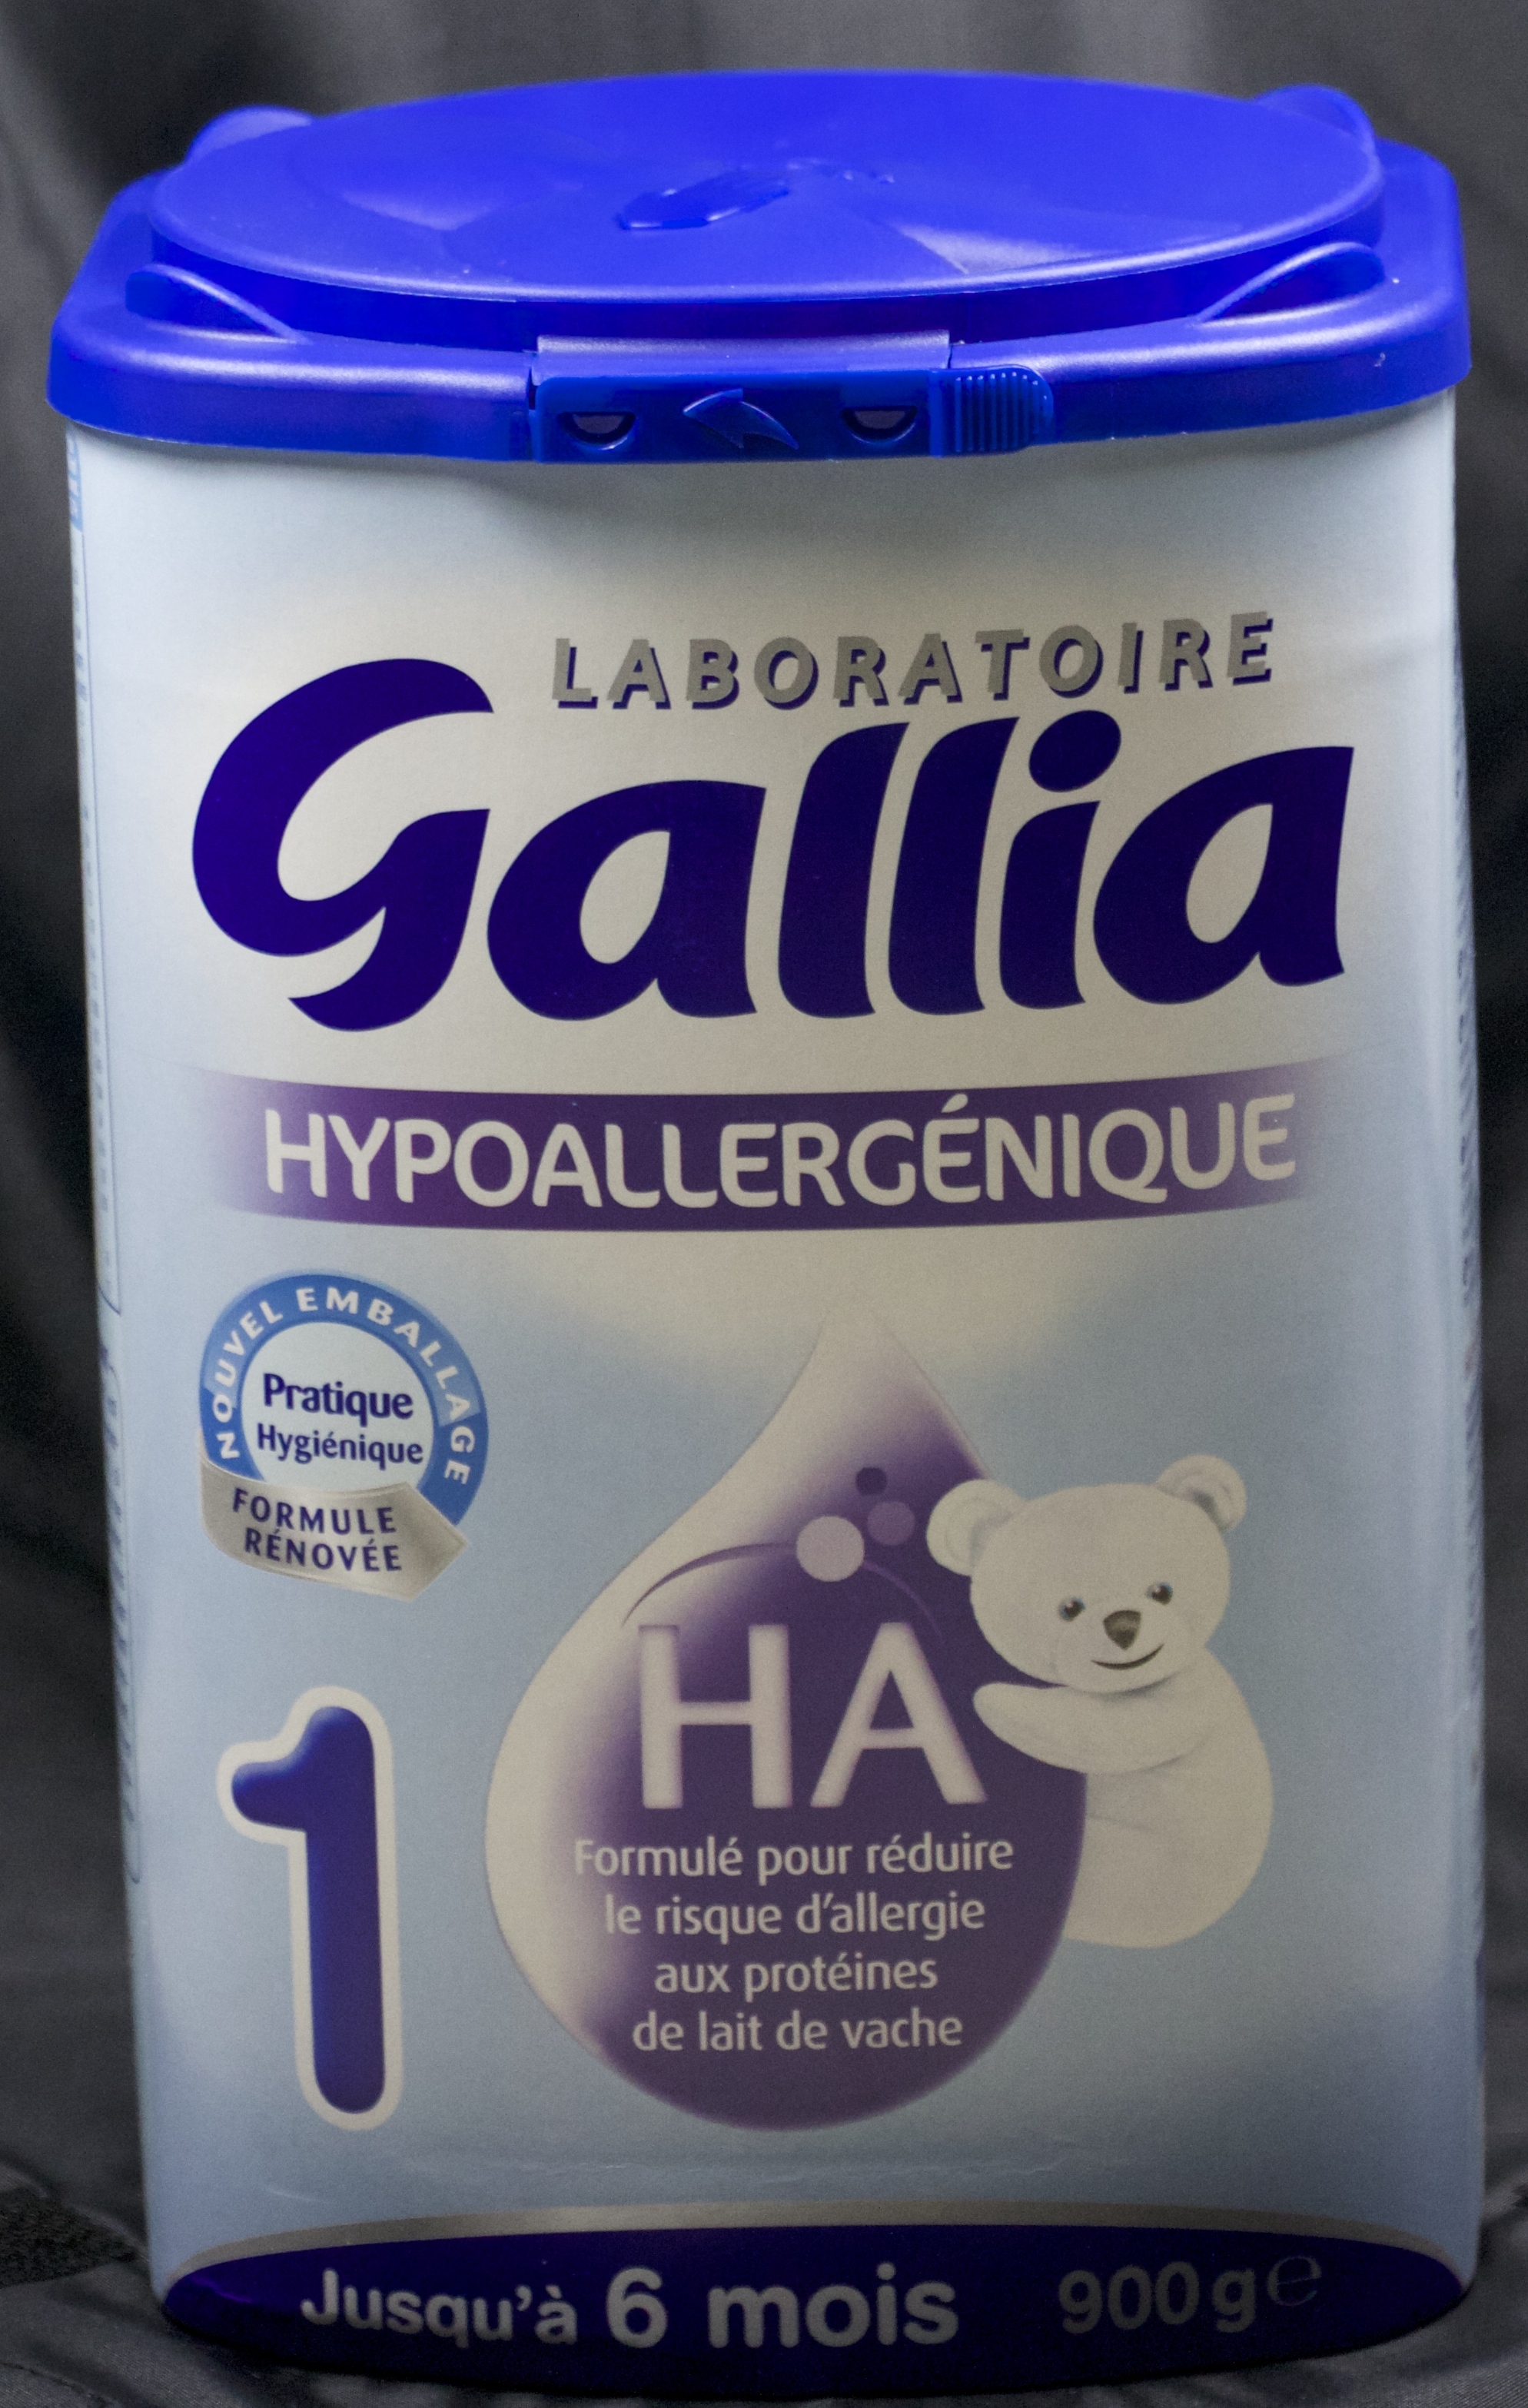 Gallia 1 galliagest premium - Tous les produits laits 1er âge